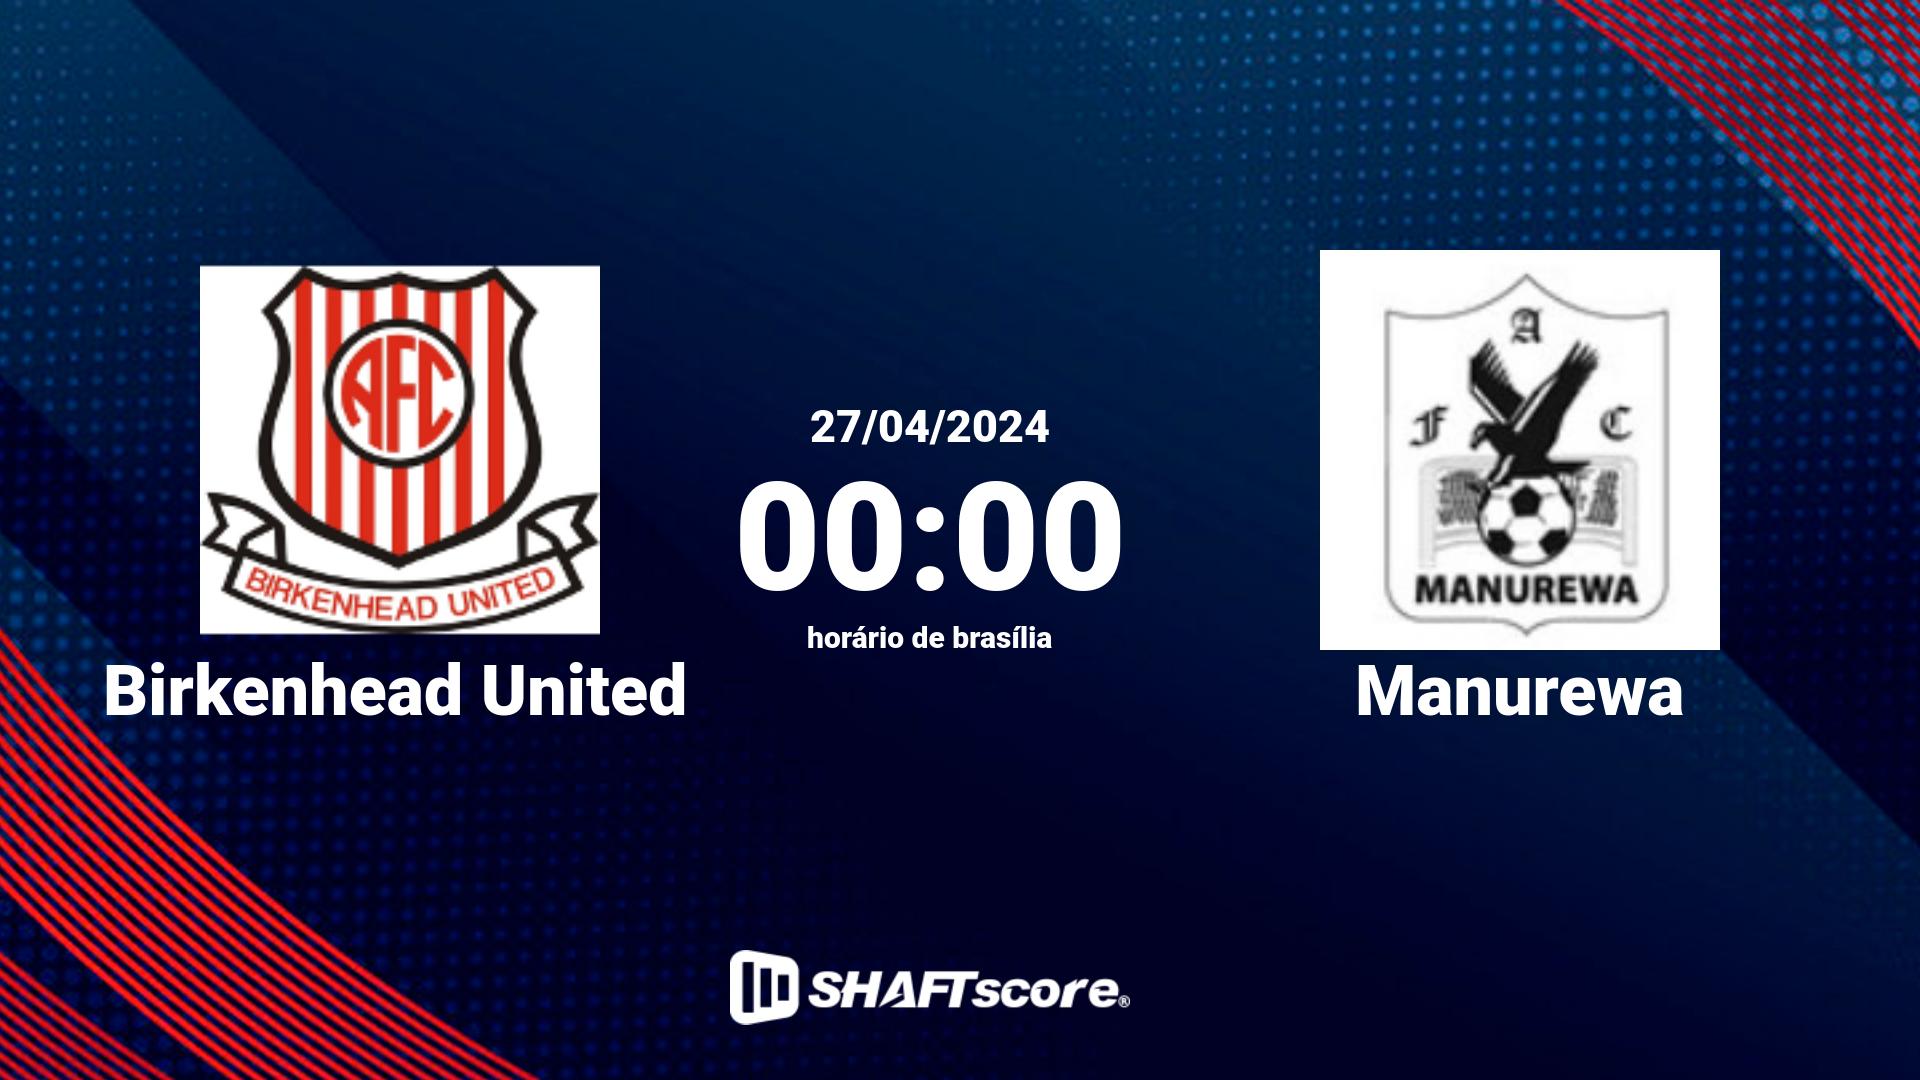 Estatísticas do jogo Birkenhead United vs Manurewa 27.04 00:00